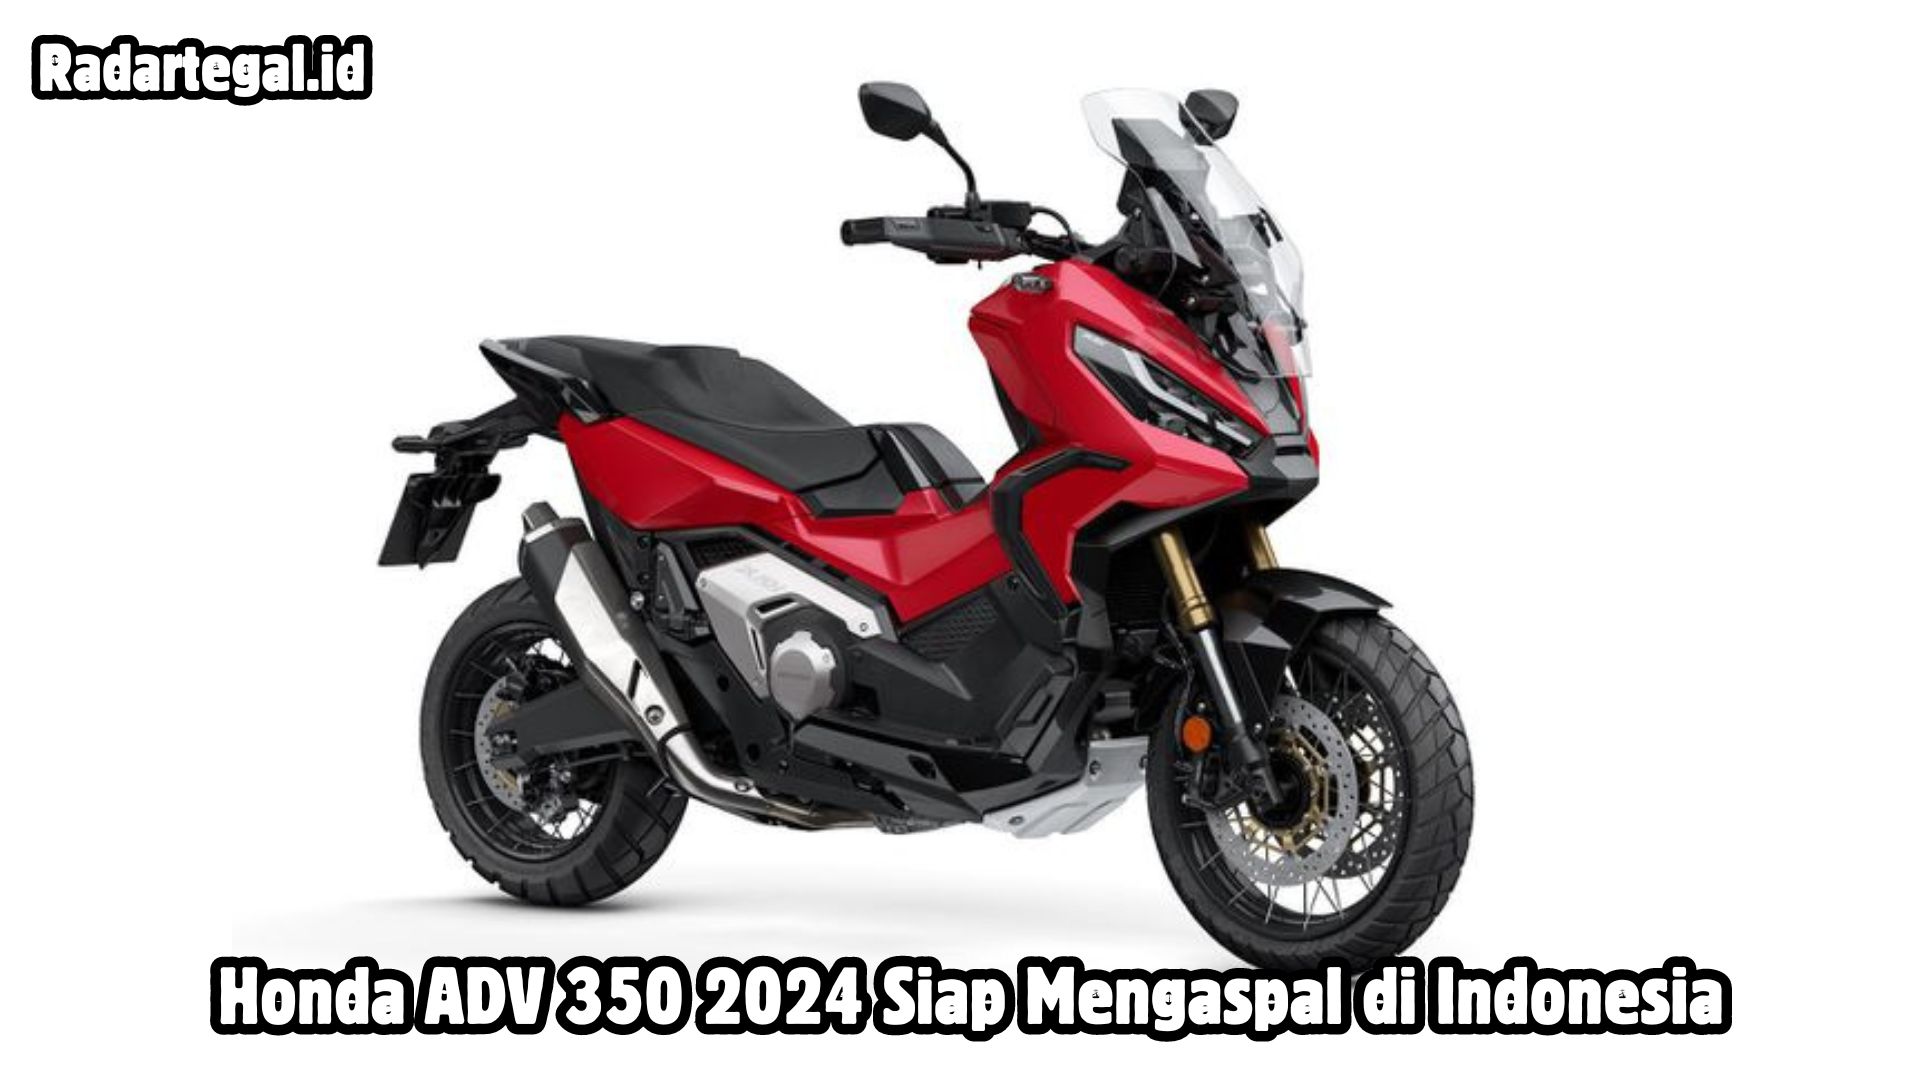 Honda ADV 350 2024, Skutik Adventure Premium yang Kini Semakin Dekat dengan Pasar Indonesia